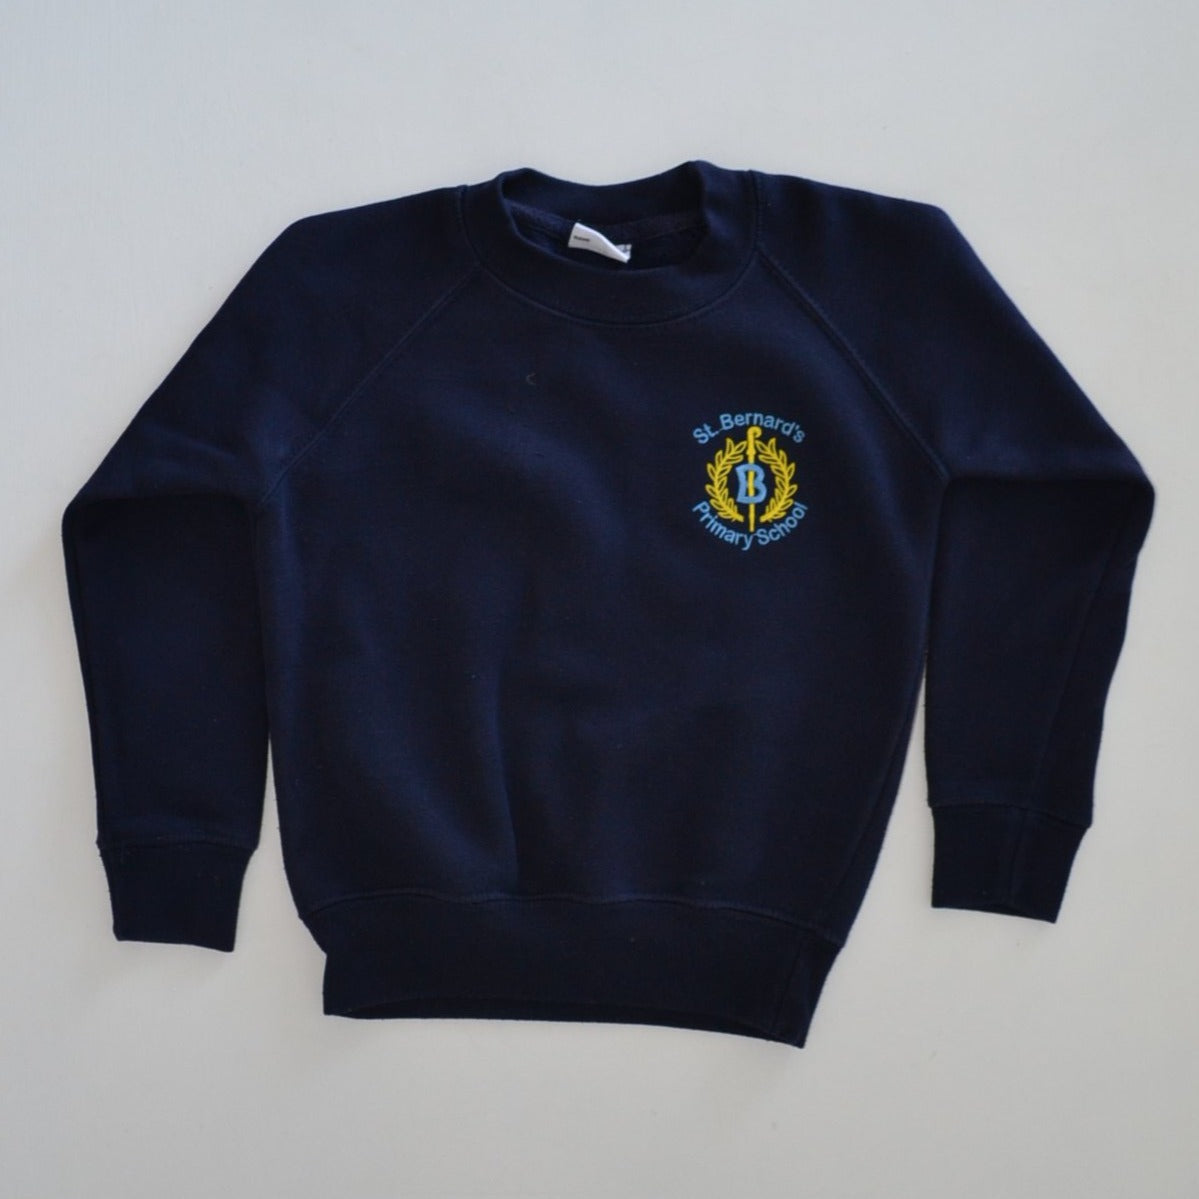 St. Bernard's Primary - Sweatshirt - Navy Crew Neck